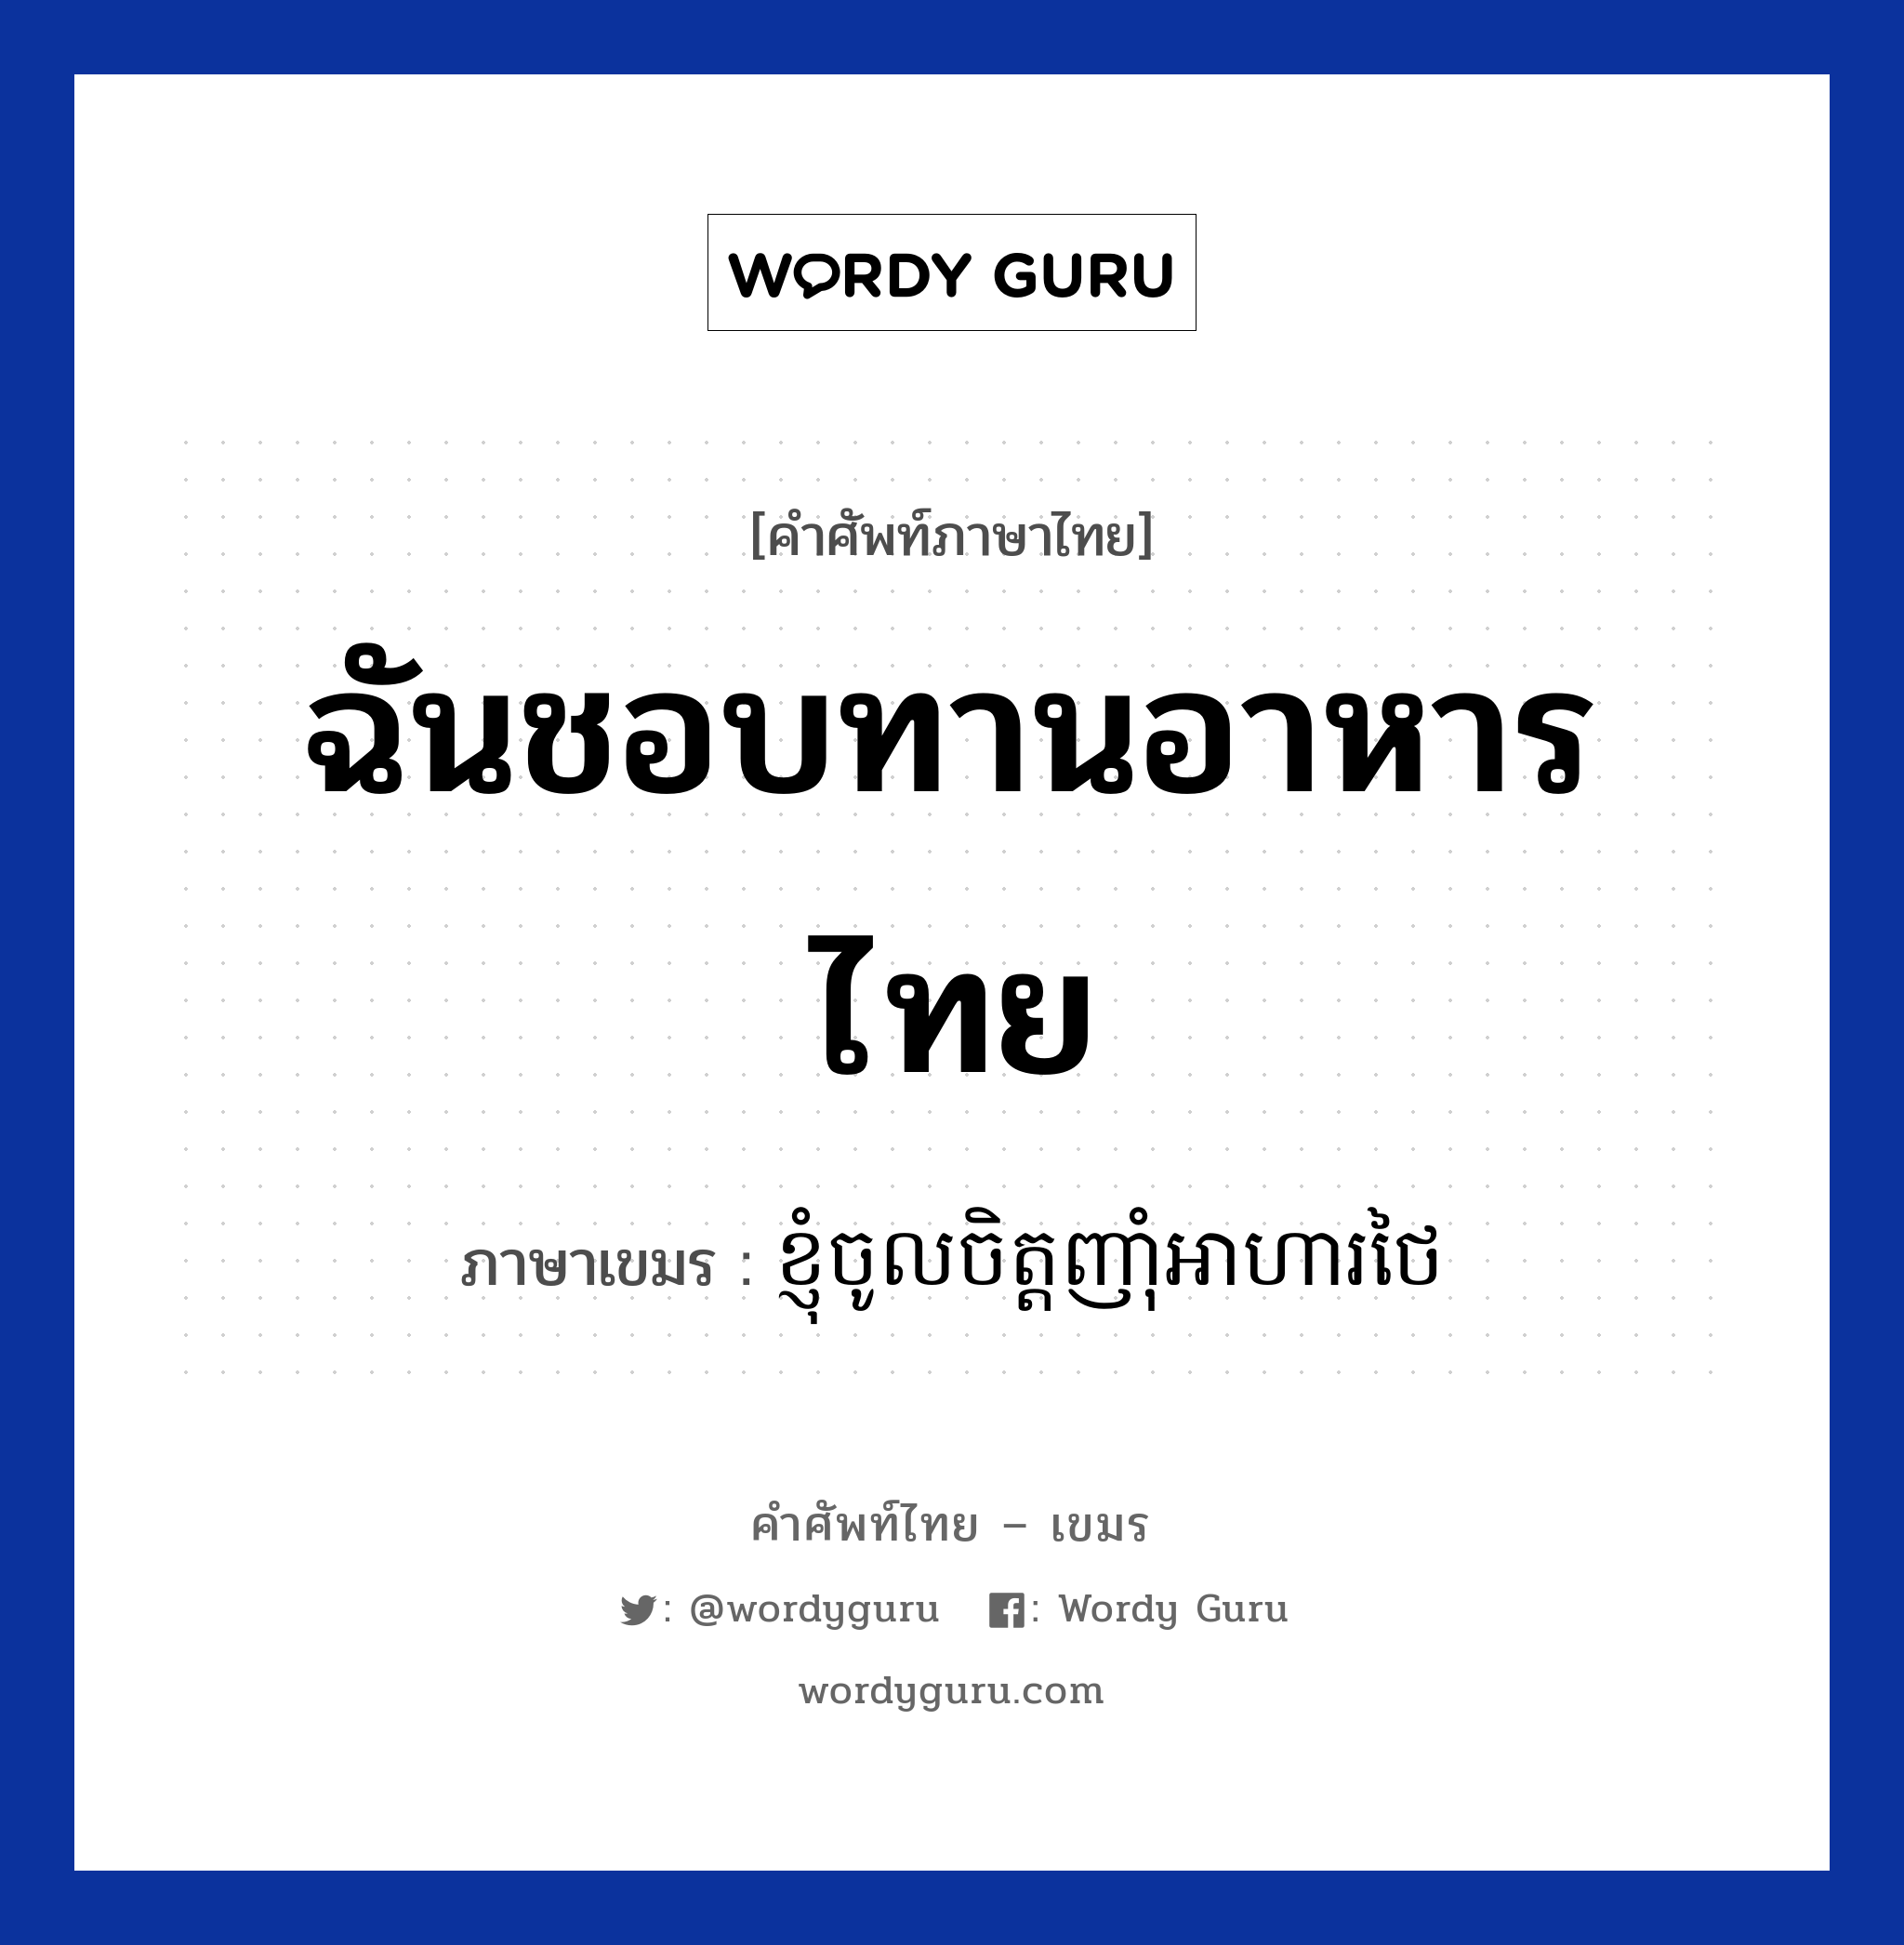 ฉันชอบทานอาหารไทย แปลว่า? คำศัพท์ในกลุ่มประเภท บทสนทนาเกี่ยวกับอาหาร, คำศัพท์ภาษาไทย - เขมร ฉันชอบทานอาหารไทย ภาษาเขมร ខ្ញុំចូលចិត្តញាំុអាហារថៃ หมวด บทสนทนาเกี่ยวกับอาหาร Knhom chol chit nham arha thai หมวด บทสนทนาเกี่ยวกับอาหาร